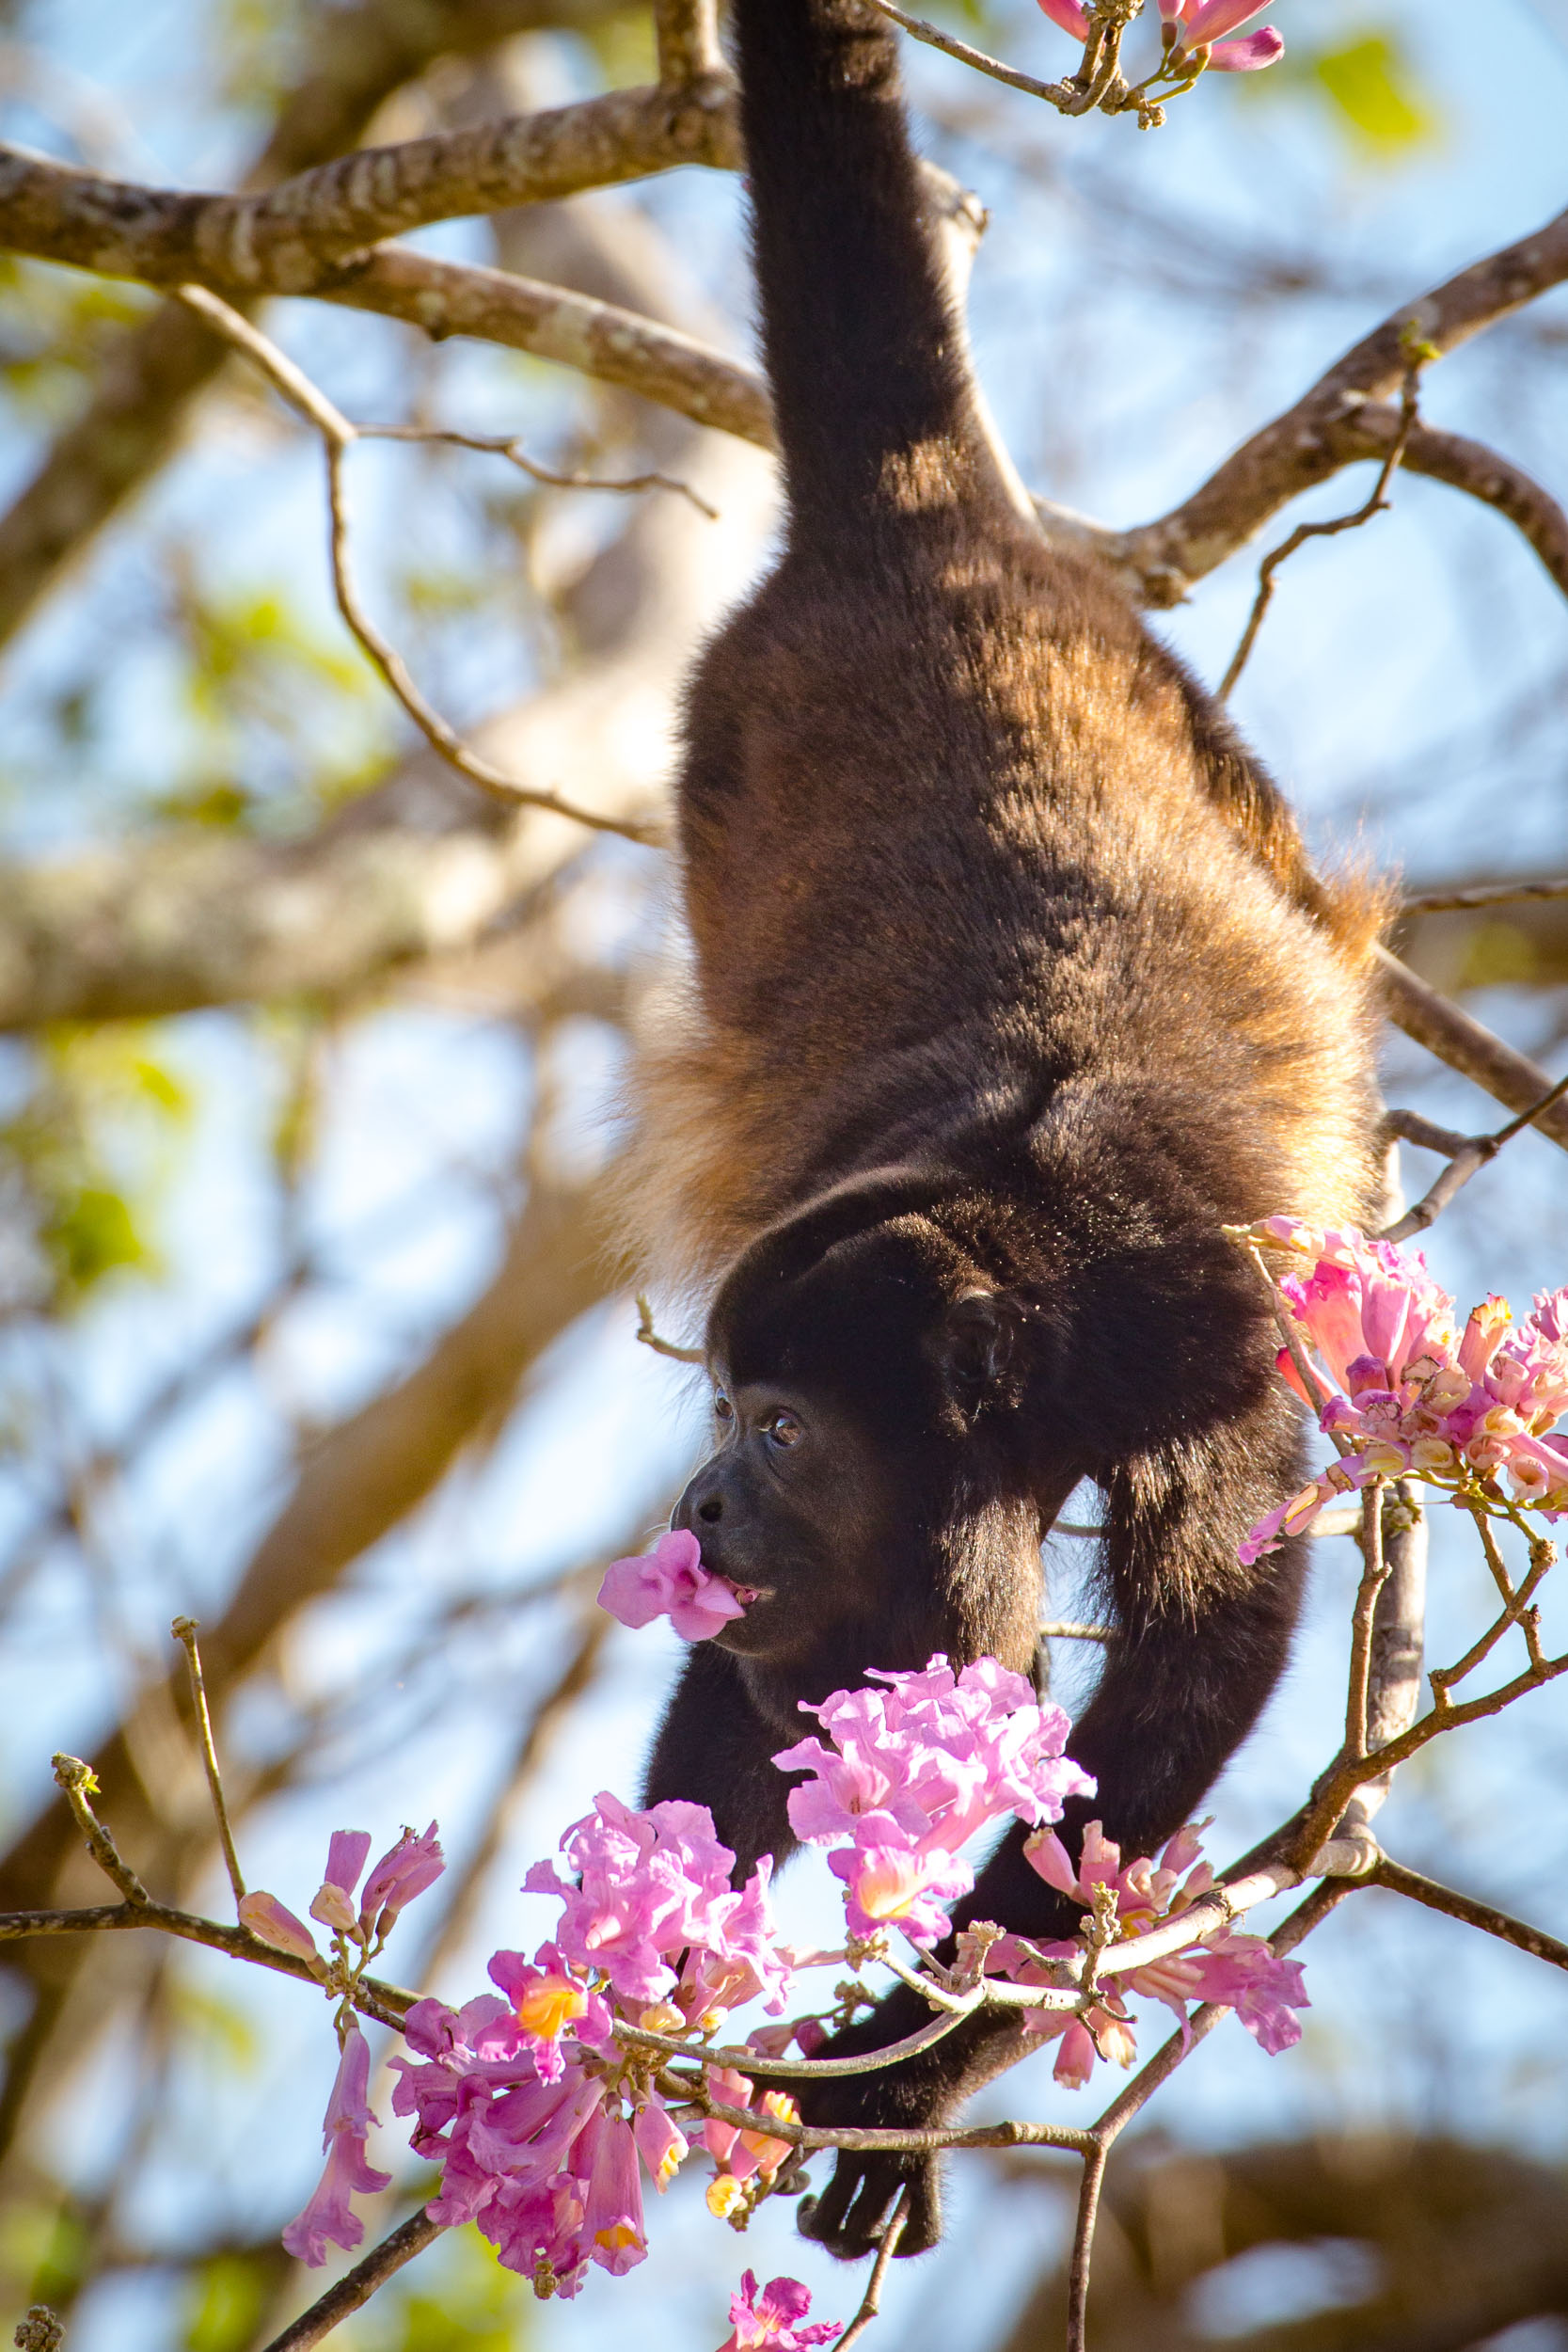 monkey eating flower